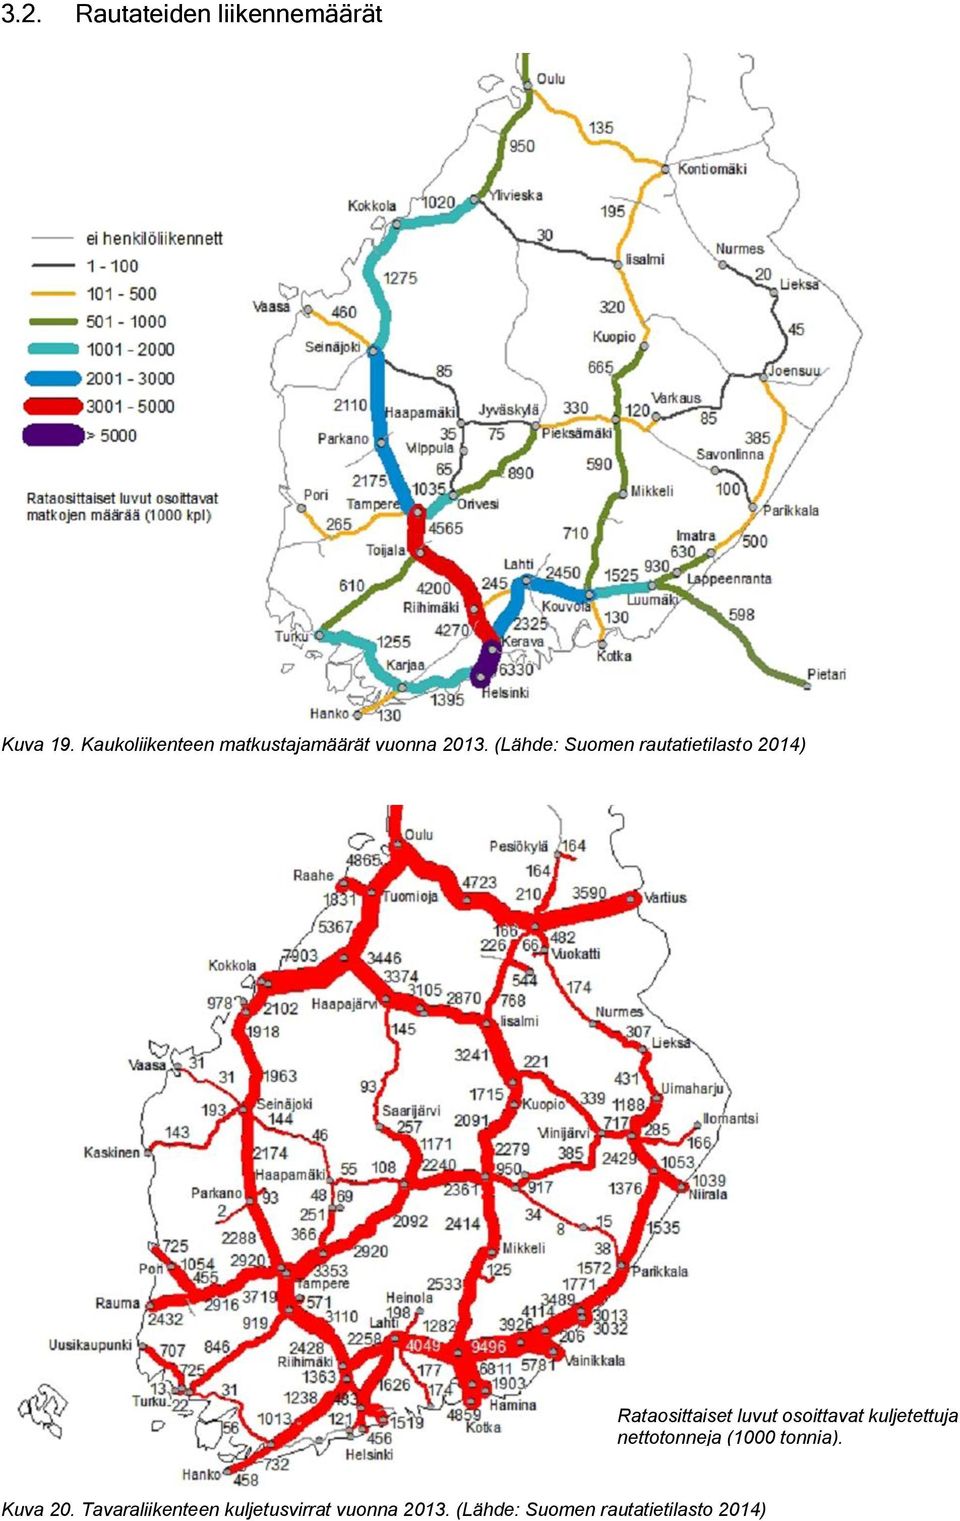 (Lähde: Suomen rautatietilasto 2014) Rataosittaiset luvut osoittavat